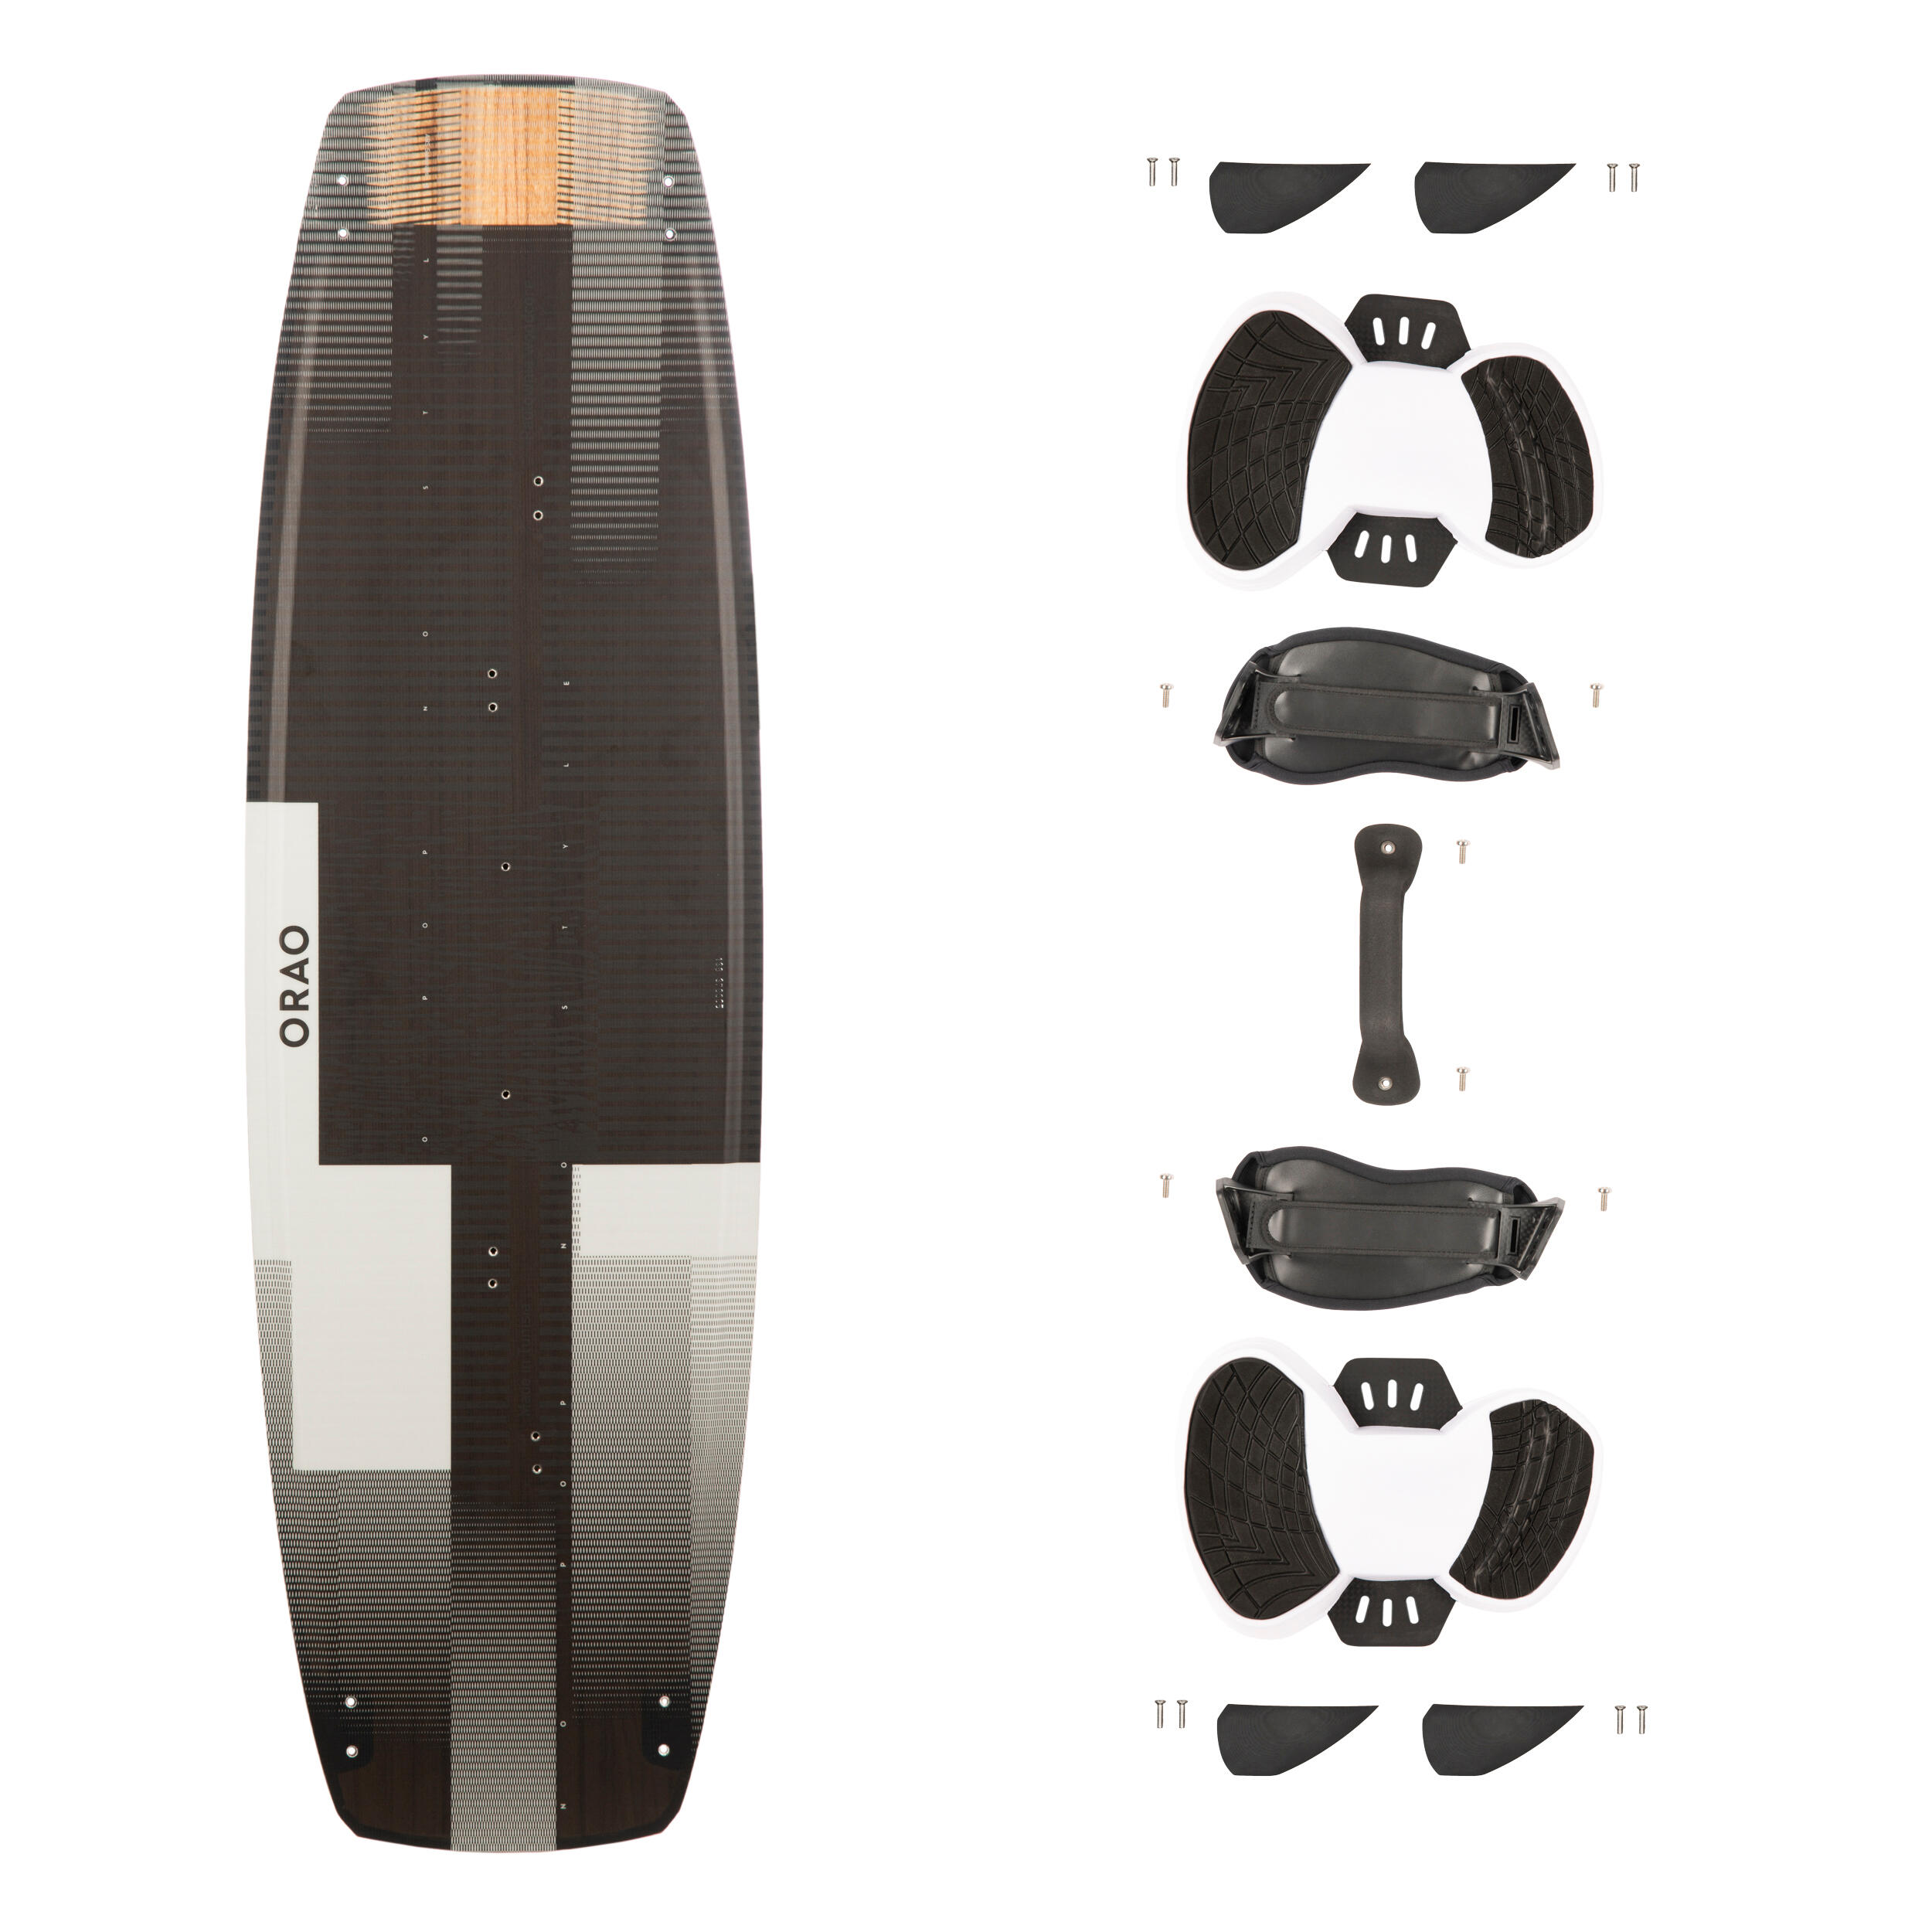 ORAO Kitesurfboard Twintip Carbon 138 × 41 cm inkl. Pads und Straps - TT500 EINHEITSGRÖSSE